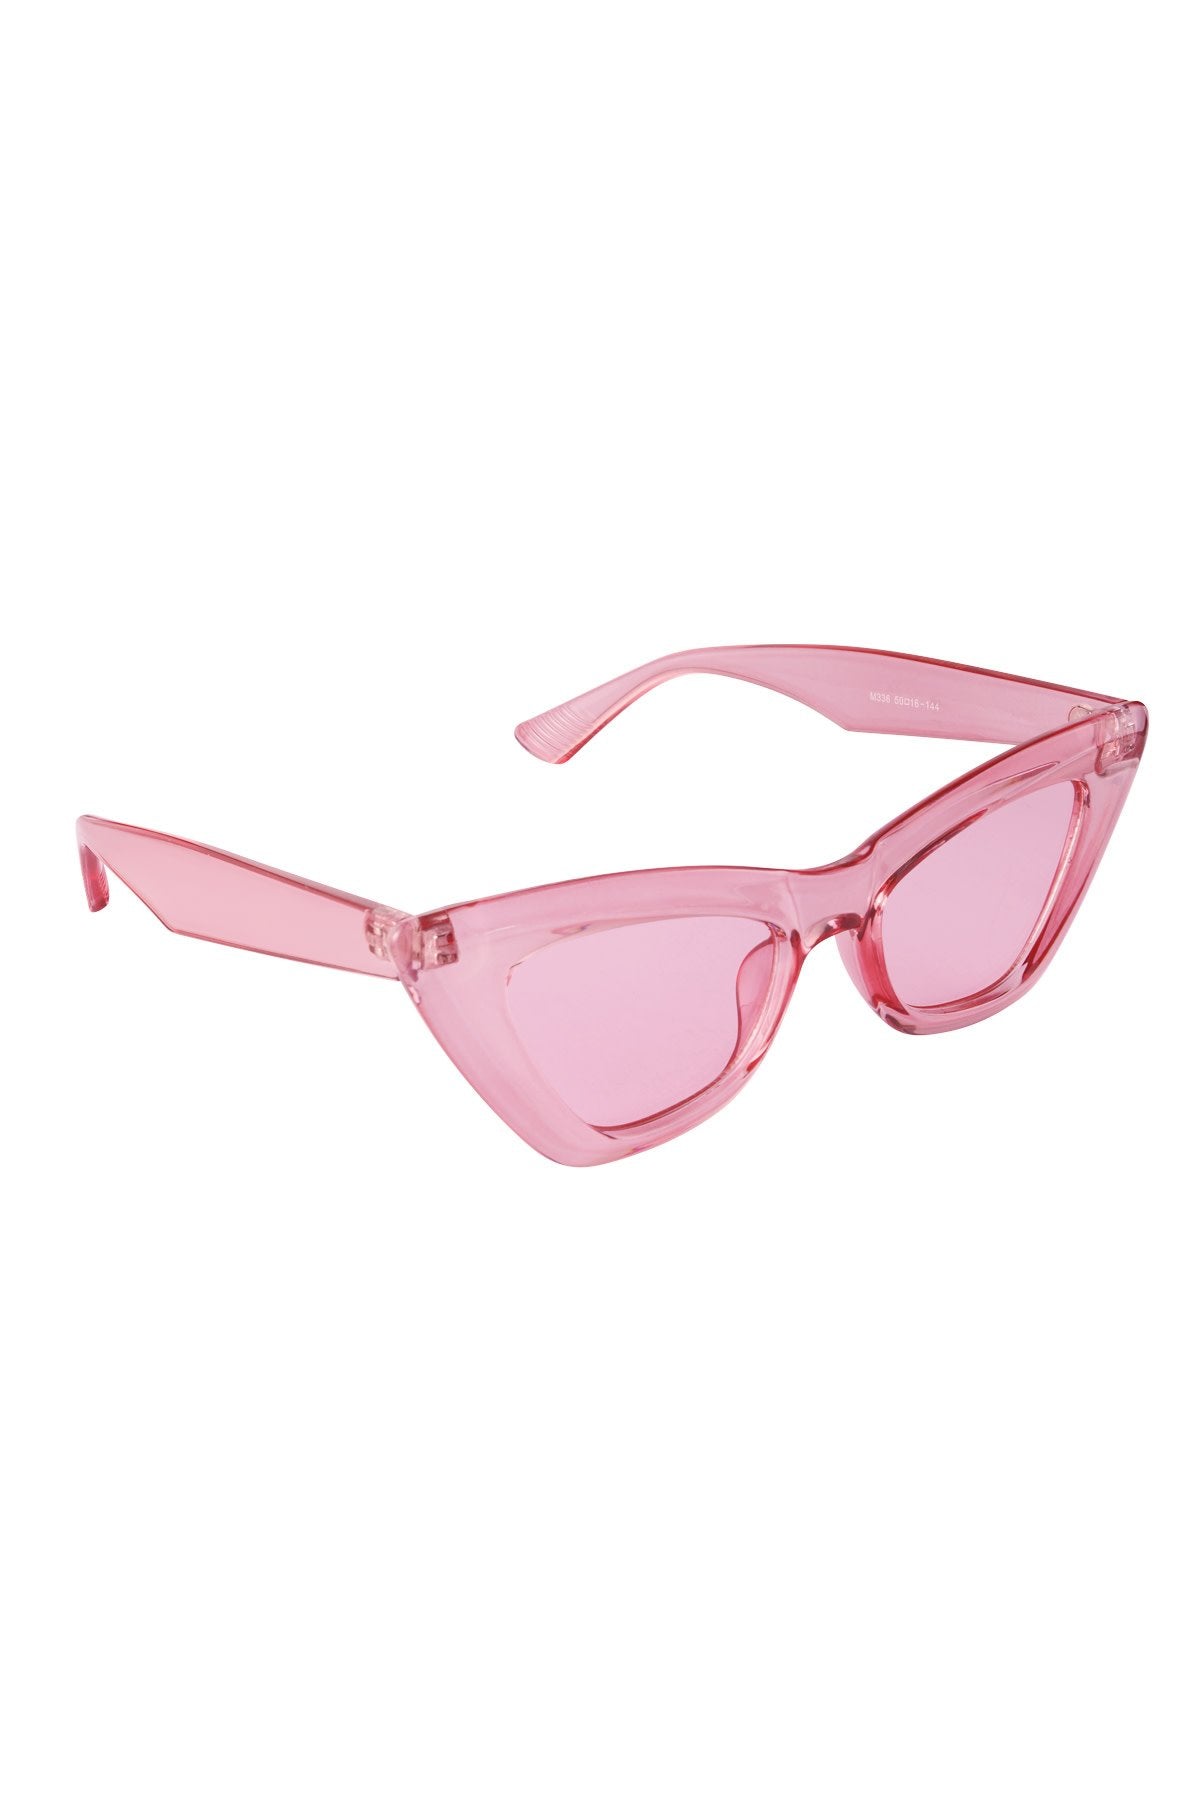 Sunglasses small cateye pink